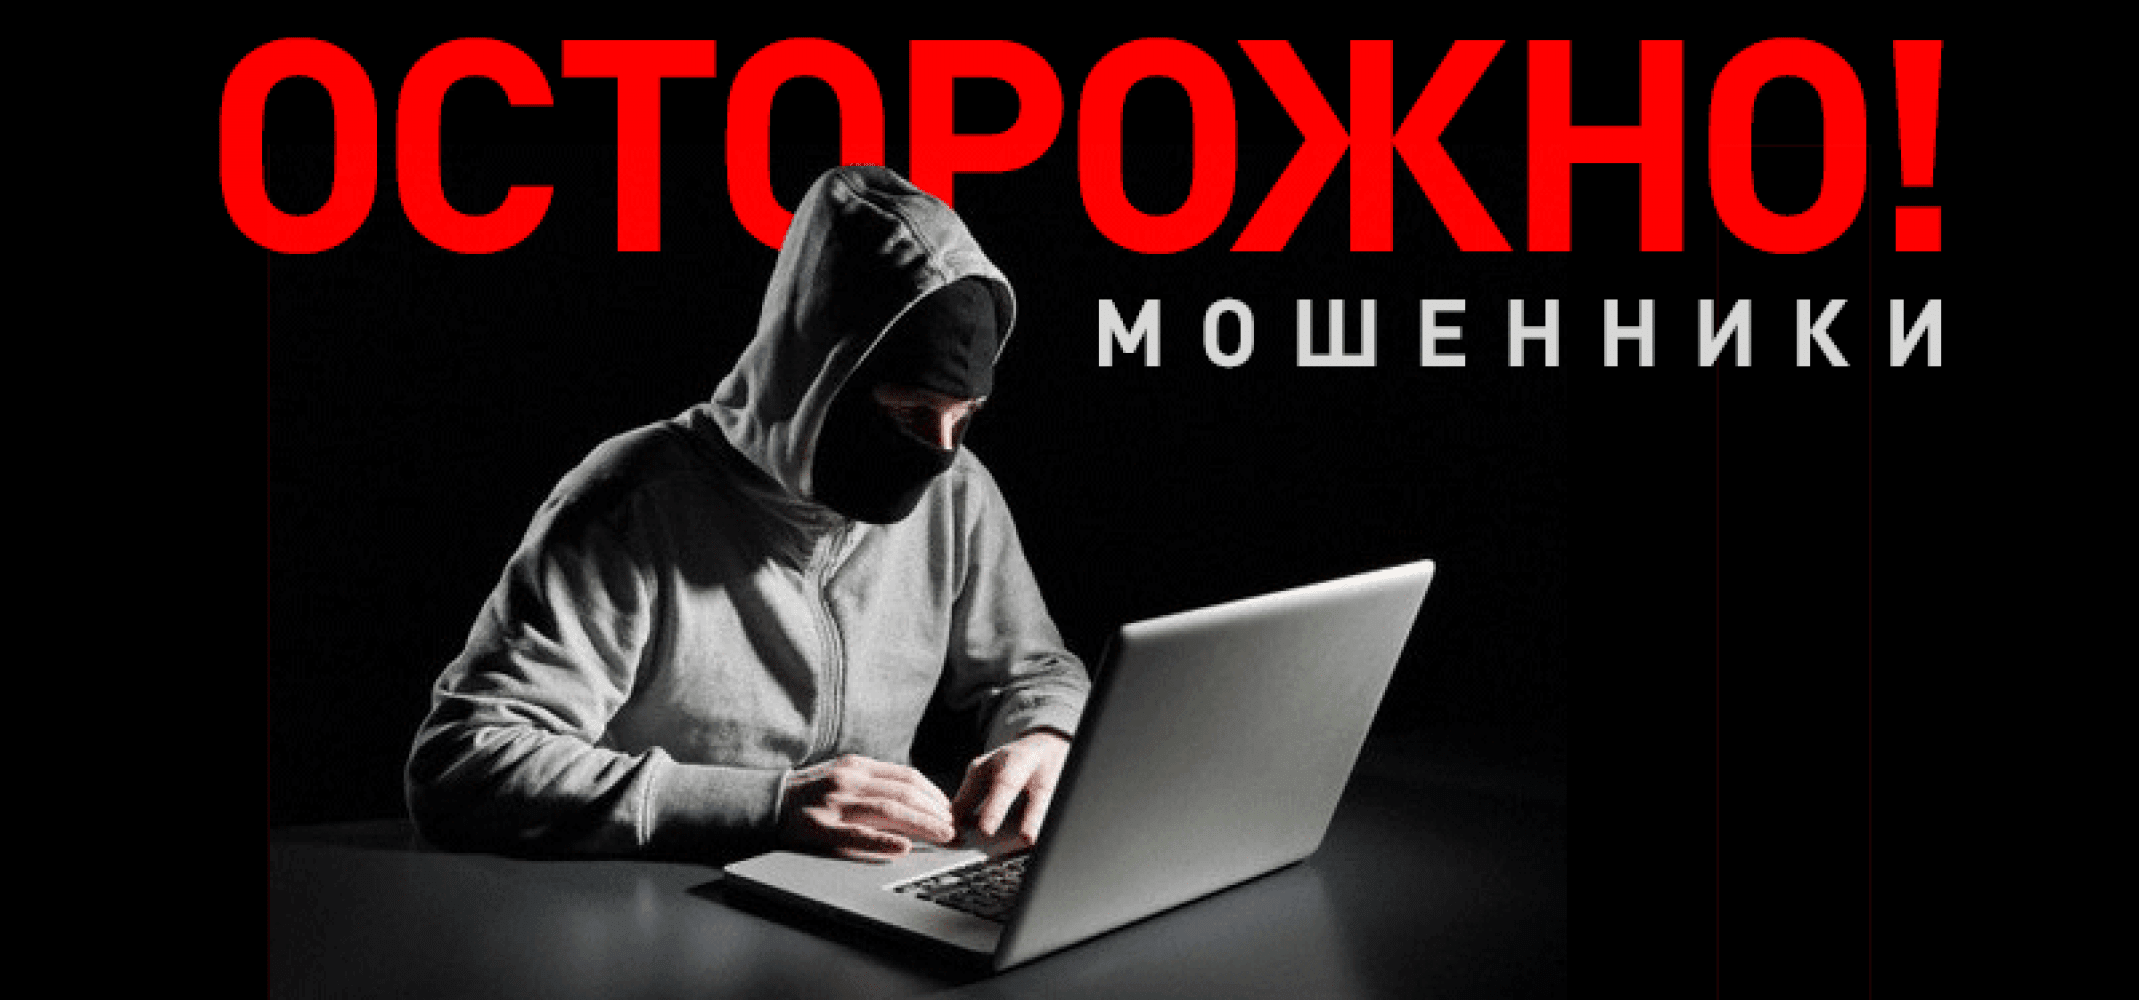 В Архангельске прошёл открытый чат на тему интернет-мошенничества